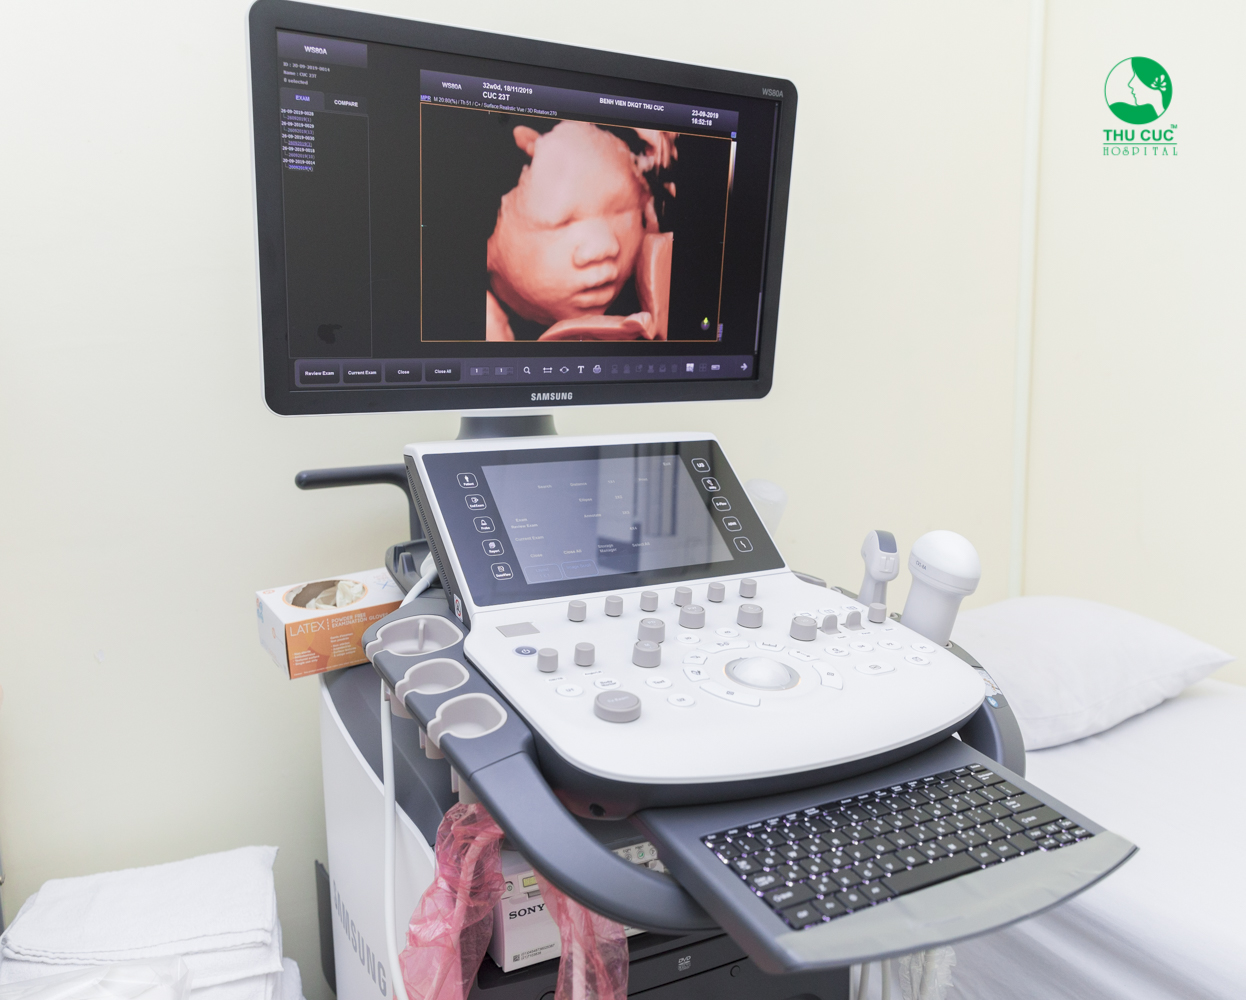 Máy siêu âm 5D tại Bệnh viện ĐKQT Thu Cúc - Bước tiến vượt bậc trong lĩnh vực sản khoa, đem đến hình ảnh chân thực, sắc nét, giúp phát hiện sớm và chẩn đoán chính xác.